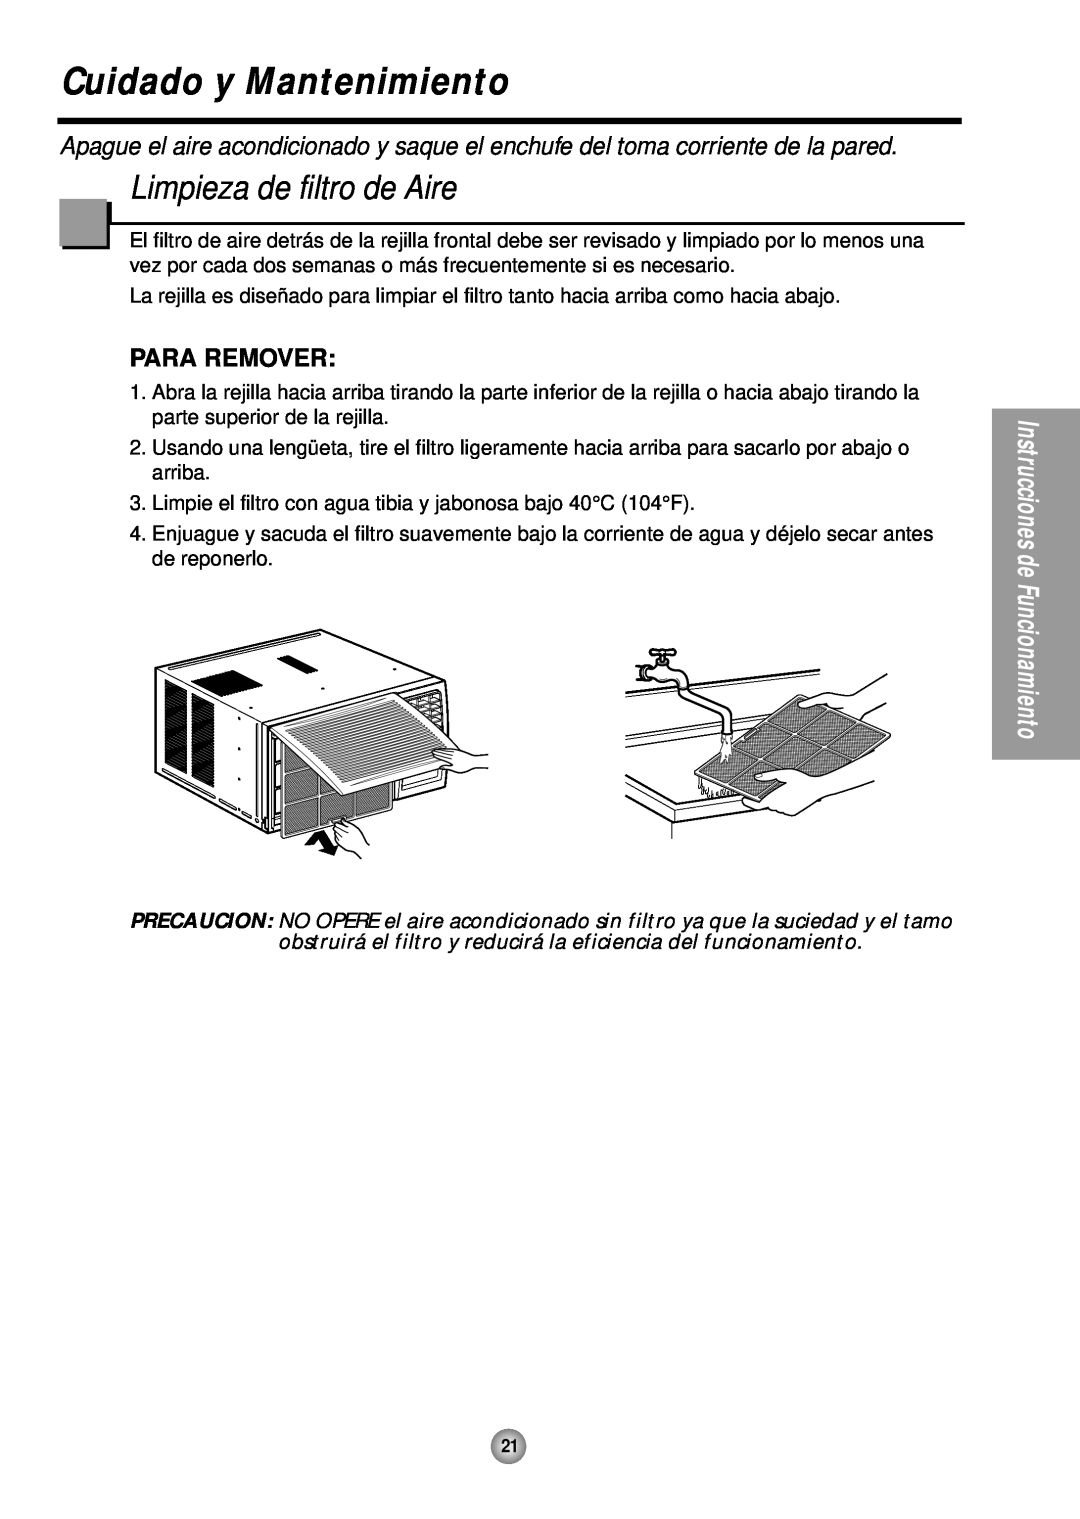 Panasonic HQ-2243TH manual Cuidado y Mantenimiento, Limpieza de filtro de Aire, Para Remover 